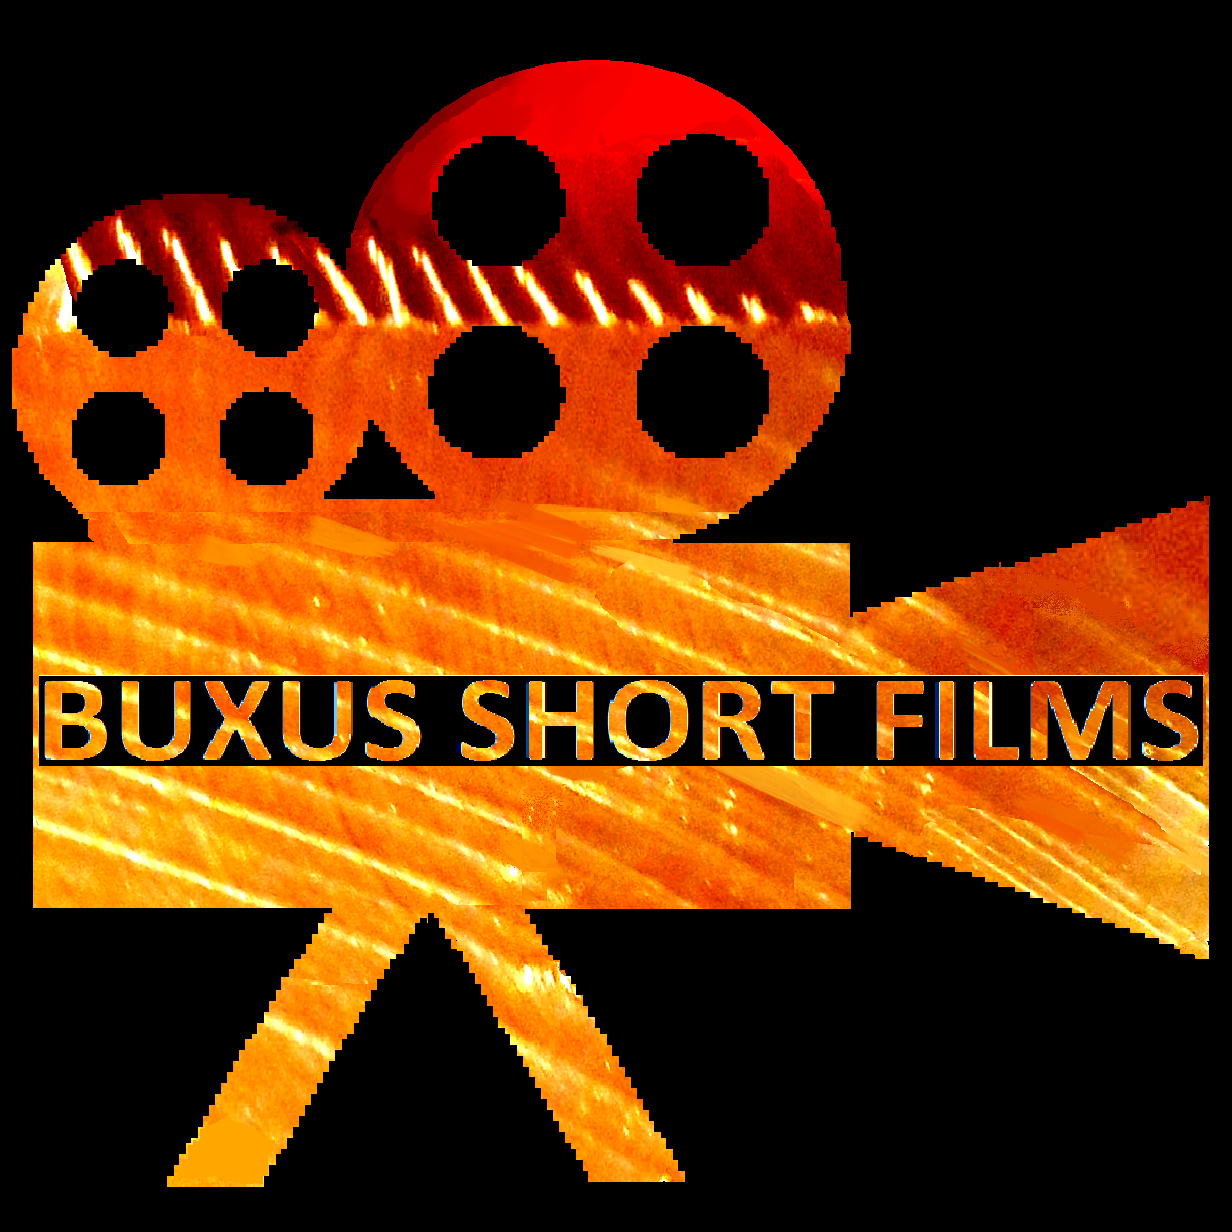 BUXUS SHORT FILMS